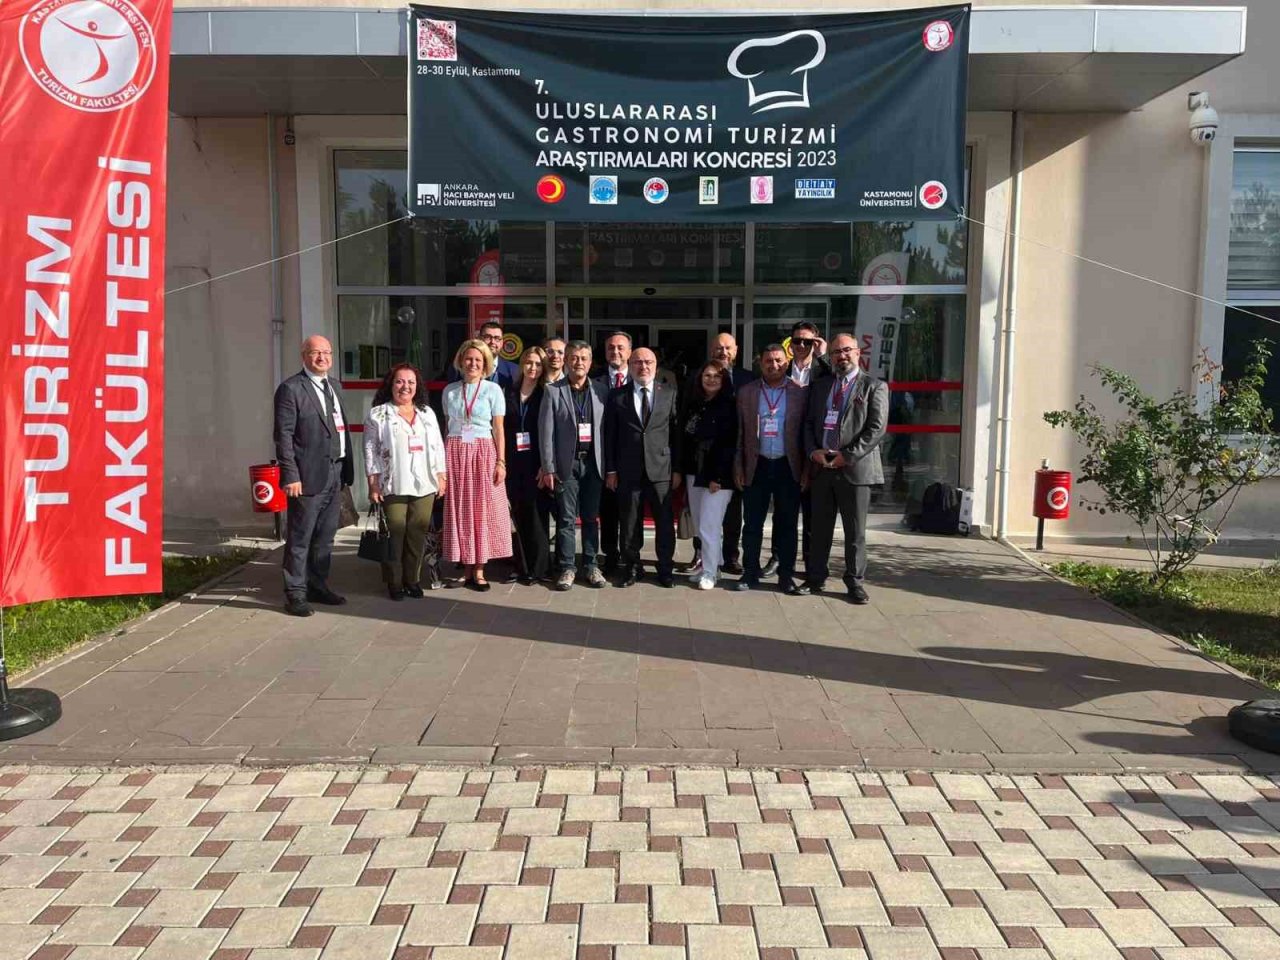 KAYÜ Rektörü Karamustafa, Kastamonu’da Gastronomi Turizmi Araştırmaları Kongresine Katıldı